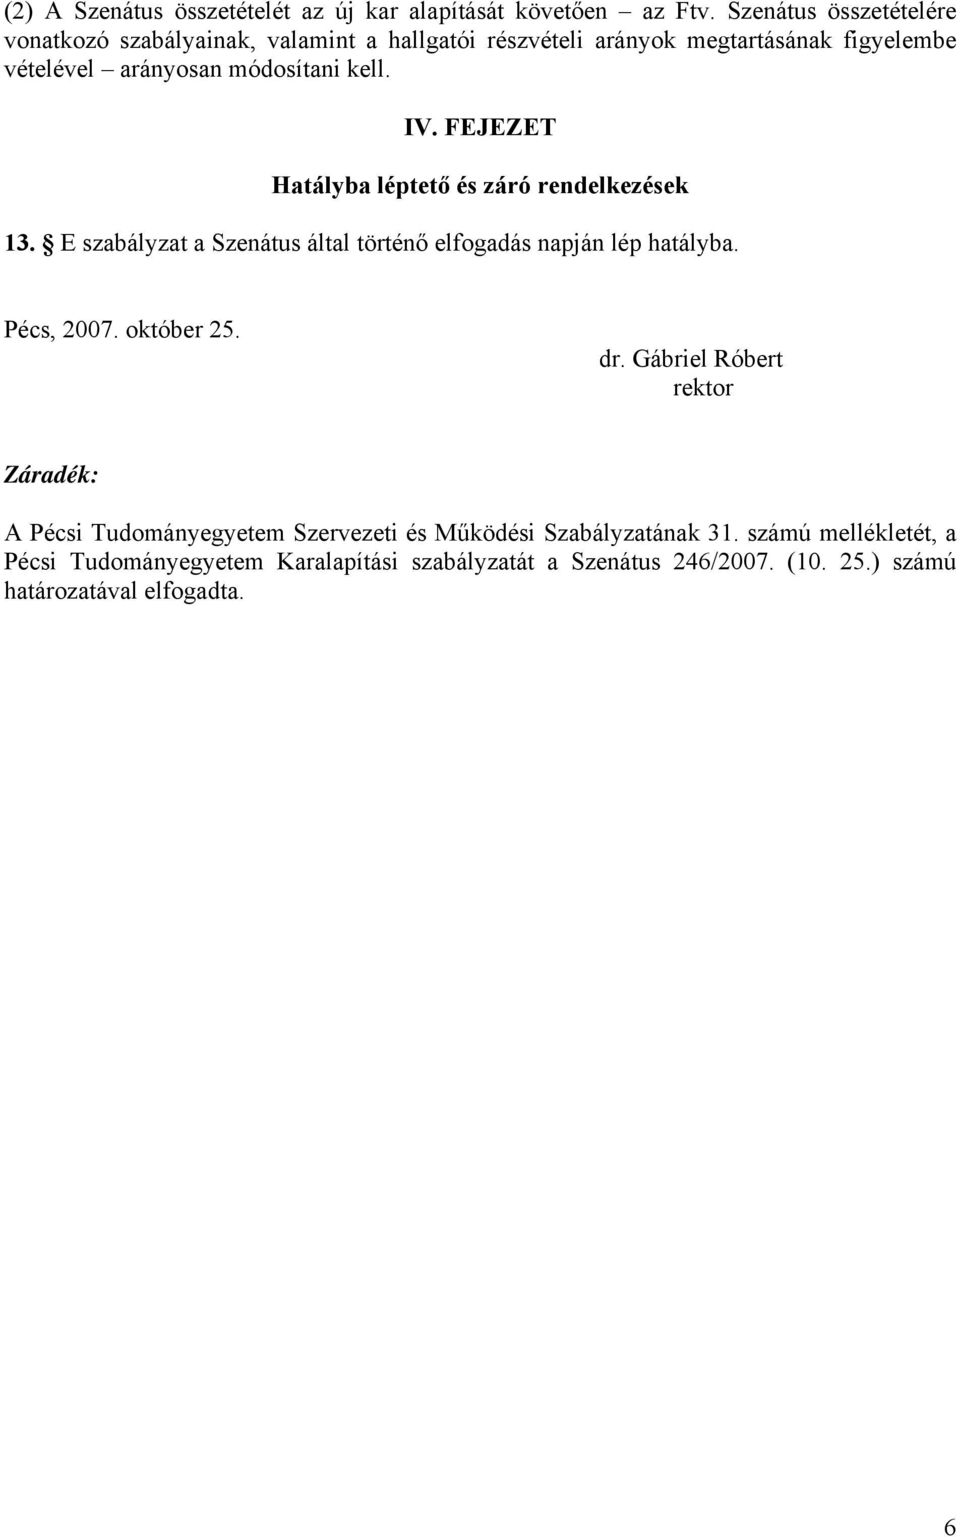 IV. FEJEZET Hatályba léptető és záró rendelkezések 13. E szabályzat a Szenátus által történő elfogadás napján lép hatályba. Pécs, 2007. október 25.